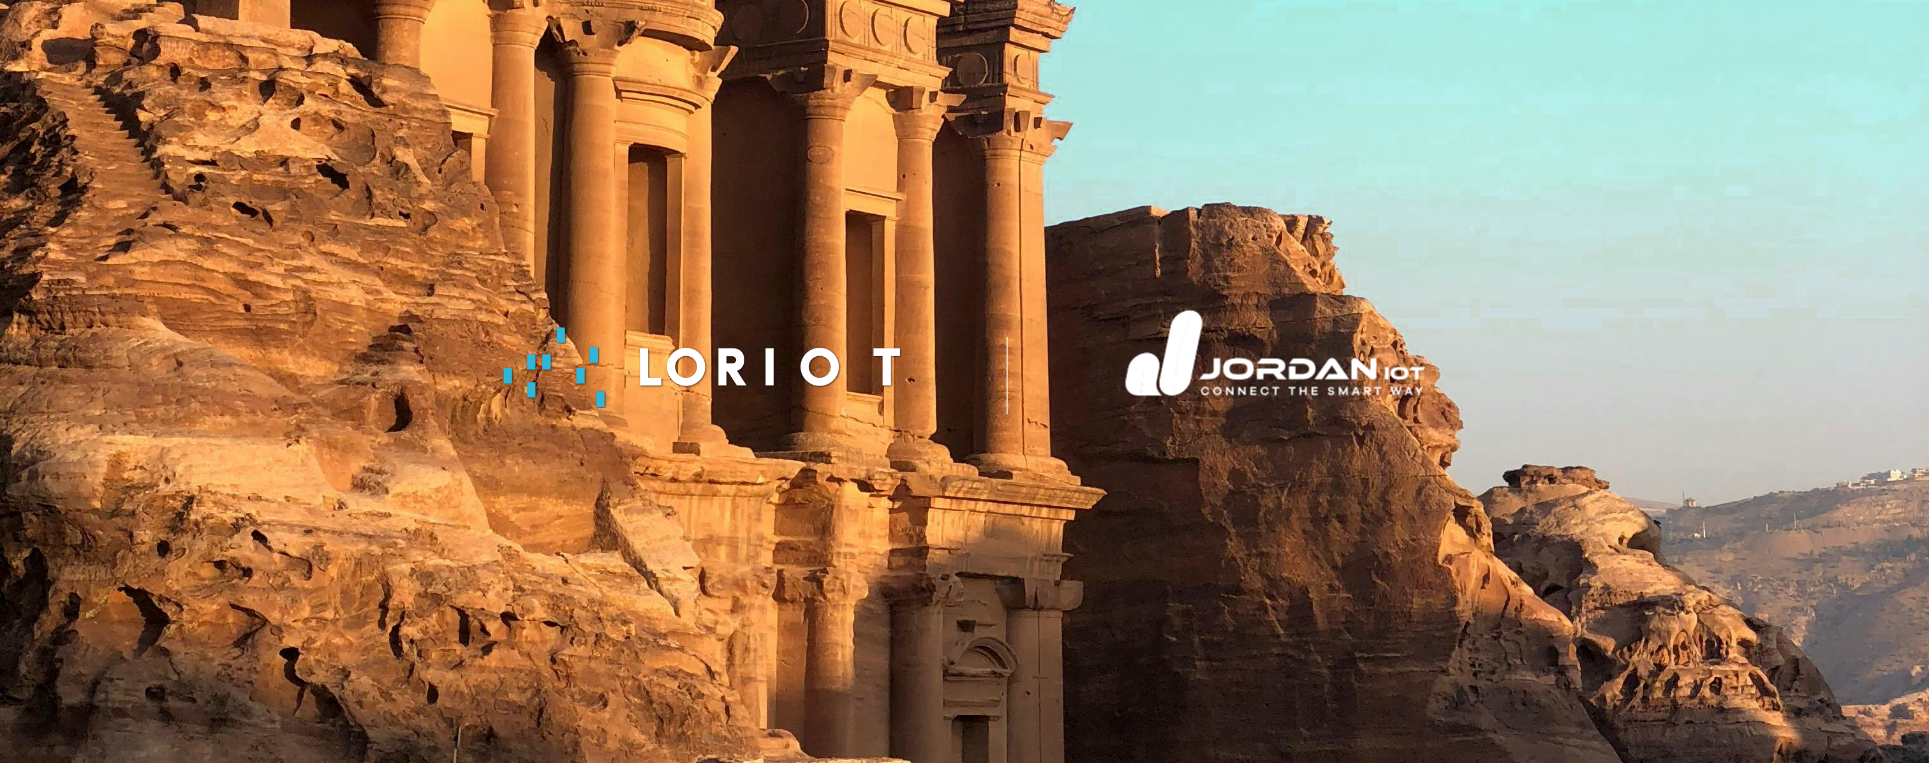 Jordan IoT partnership